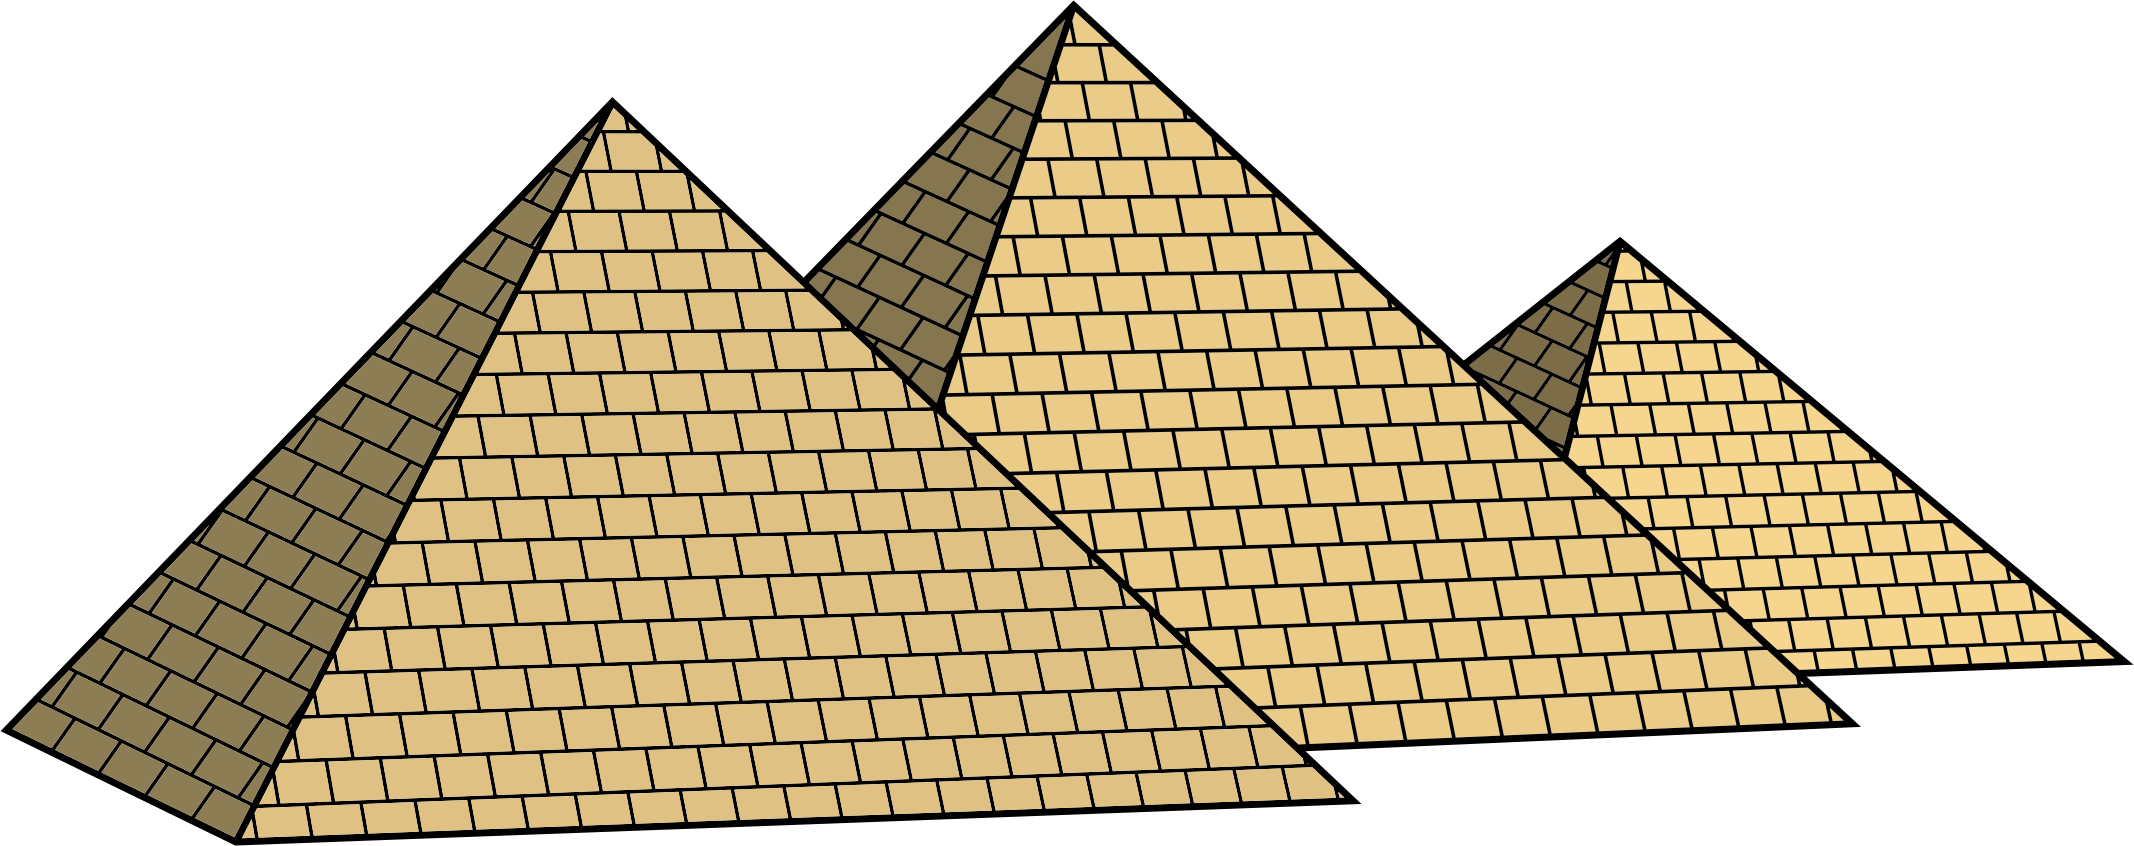 Download PNG image - Pyramids Transparent PNG 